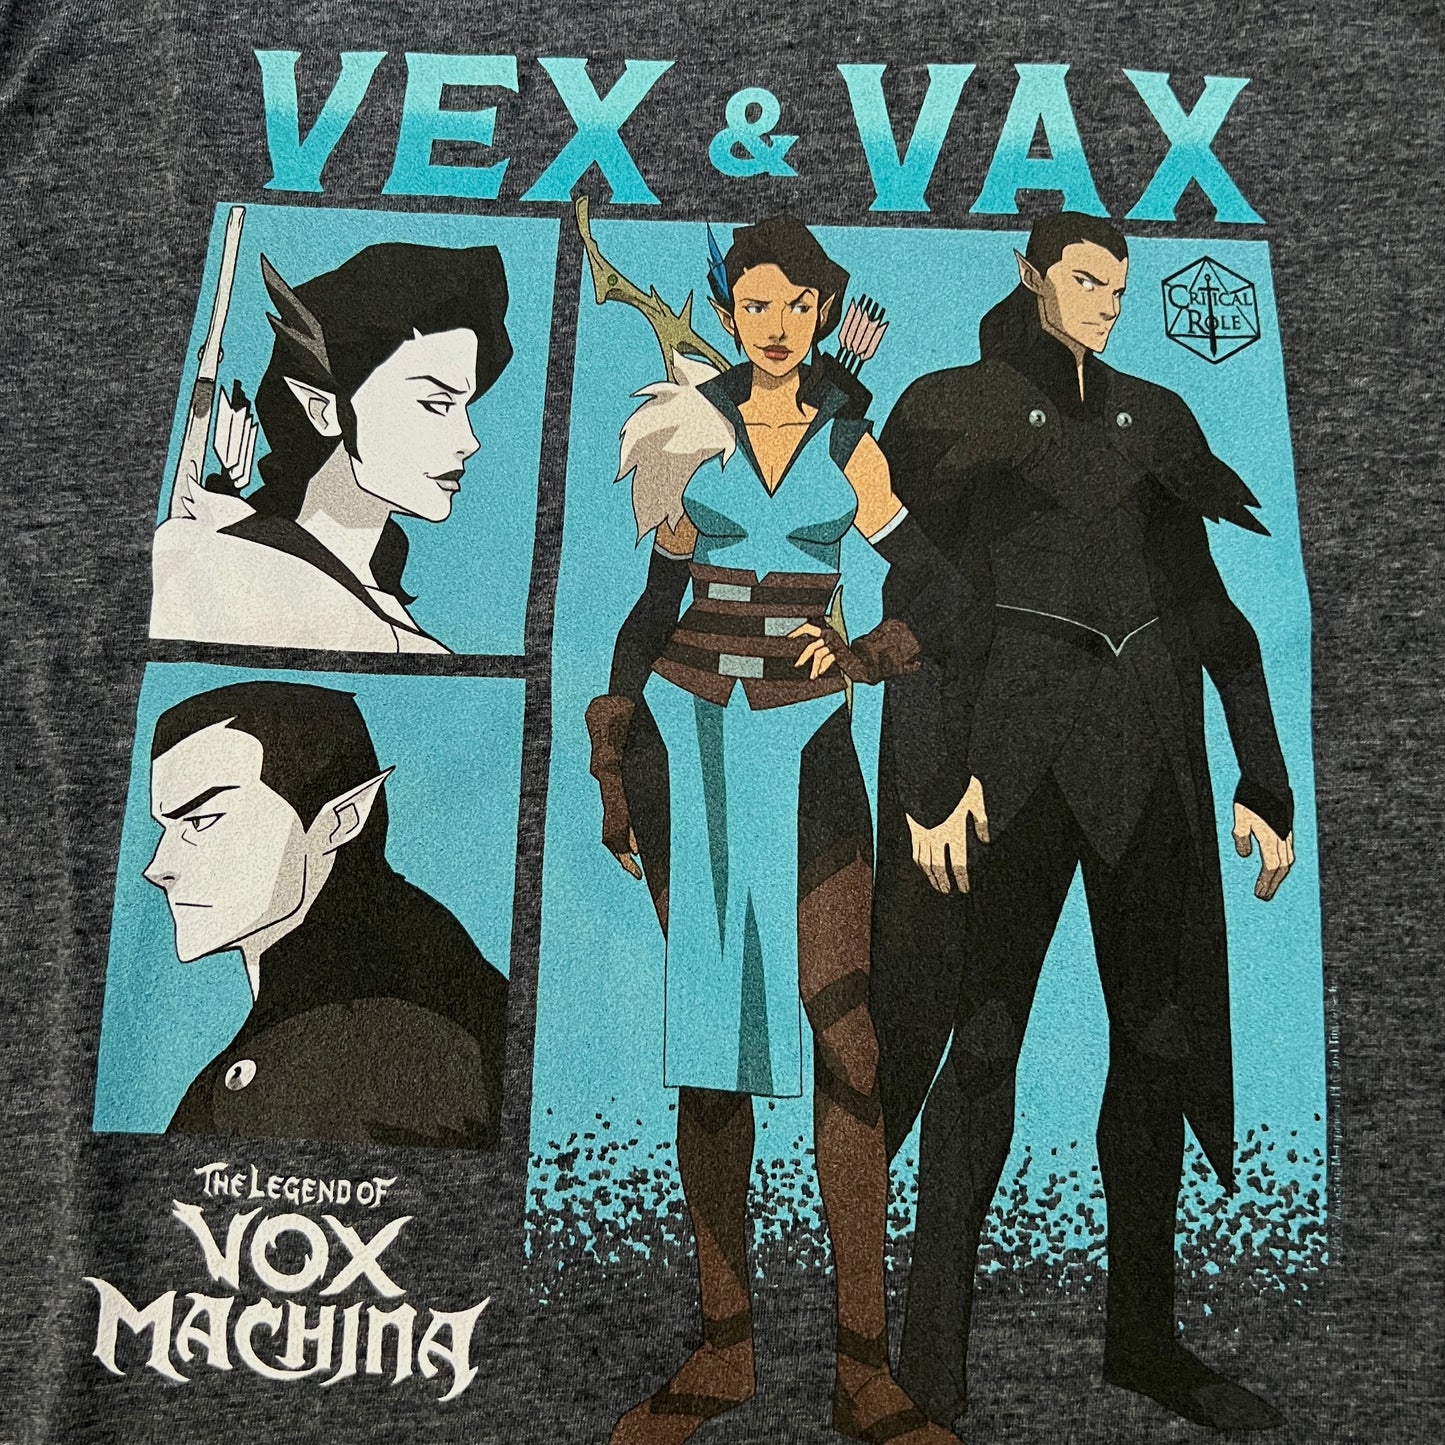 Legend of Vox Machina Vex & Vax Tee